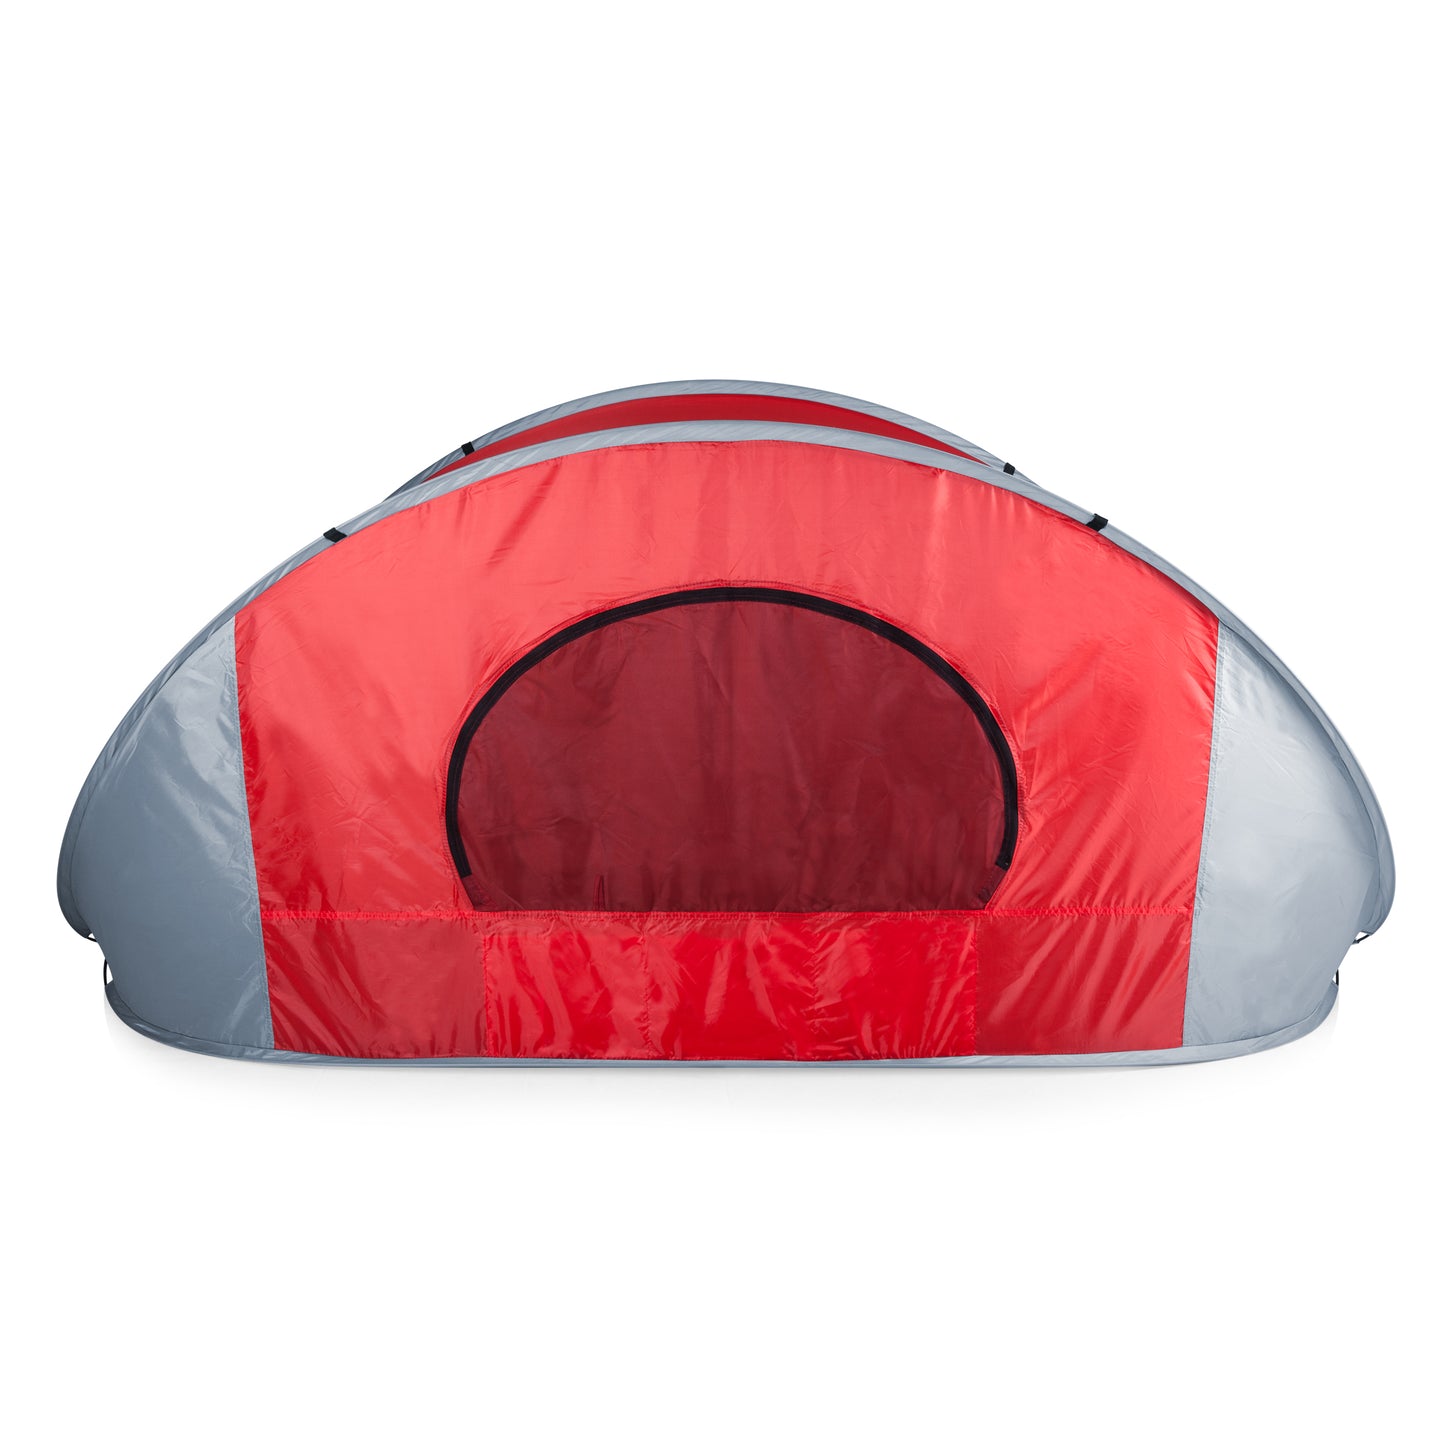 Tennessee Titans - Manta Portable Beach Tent